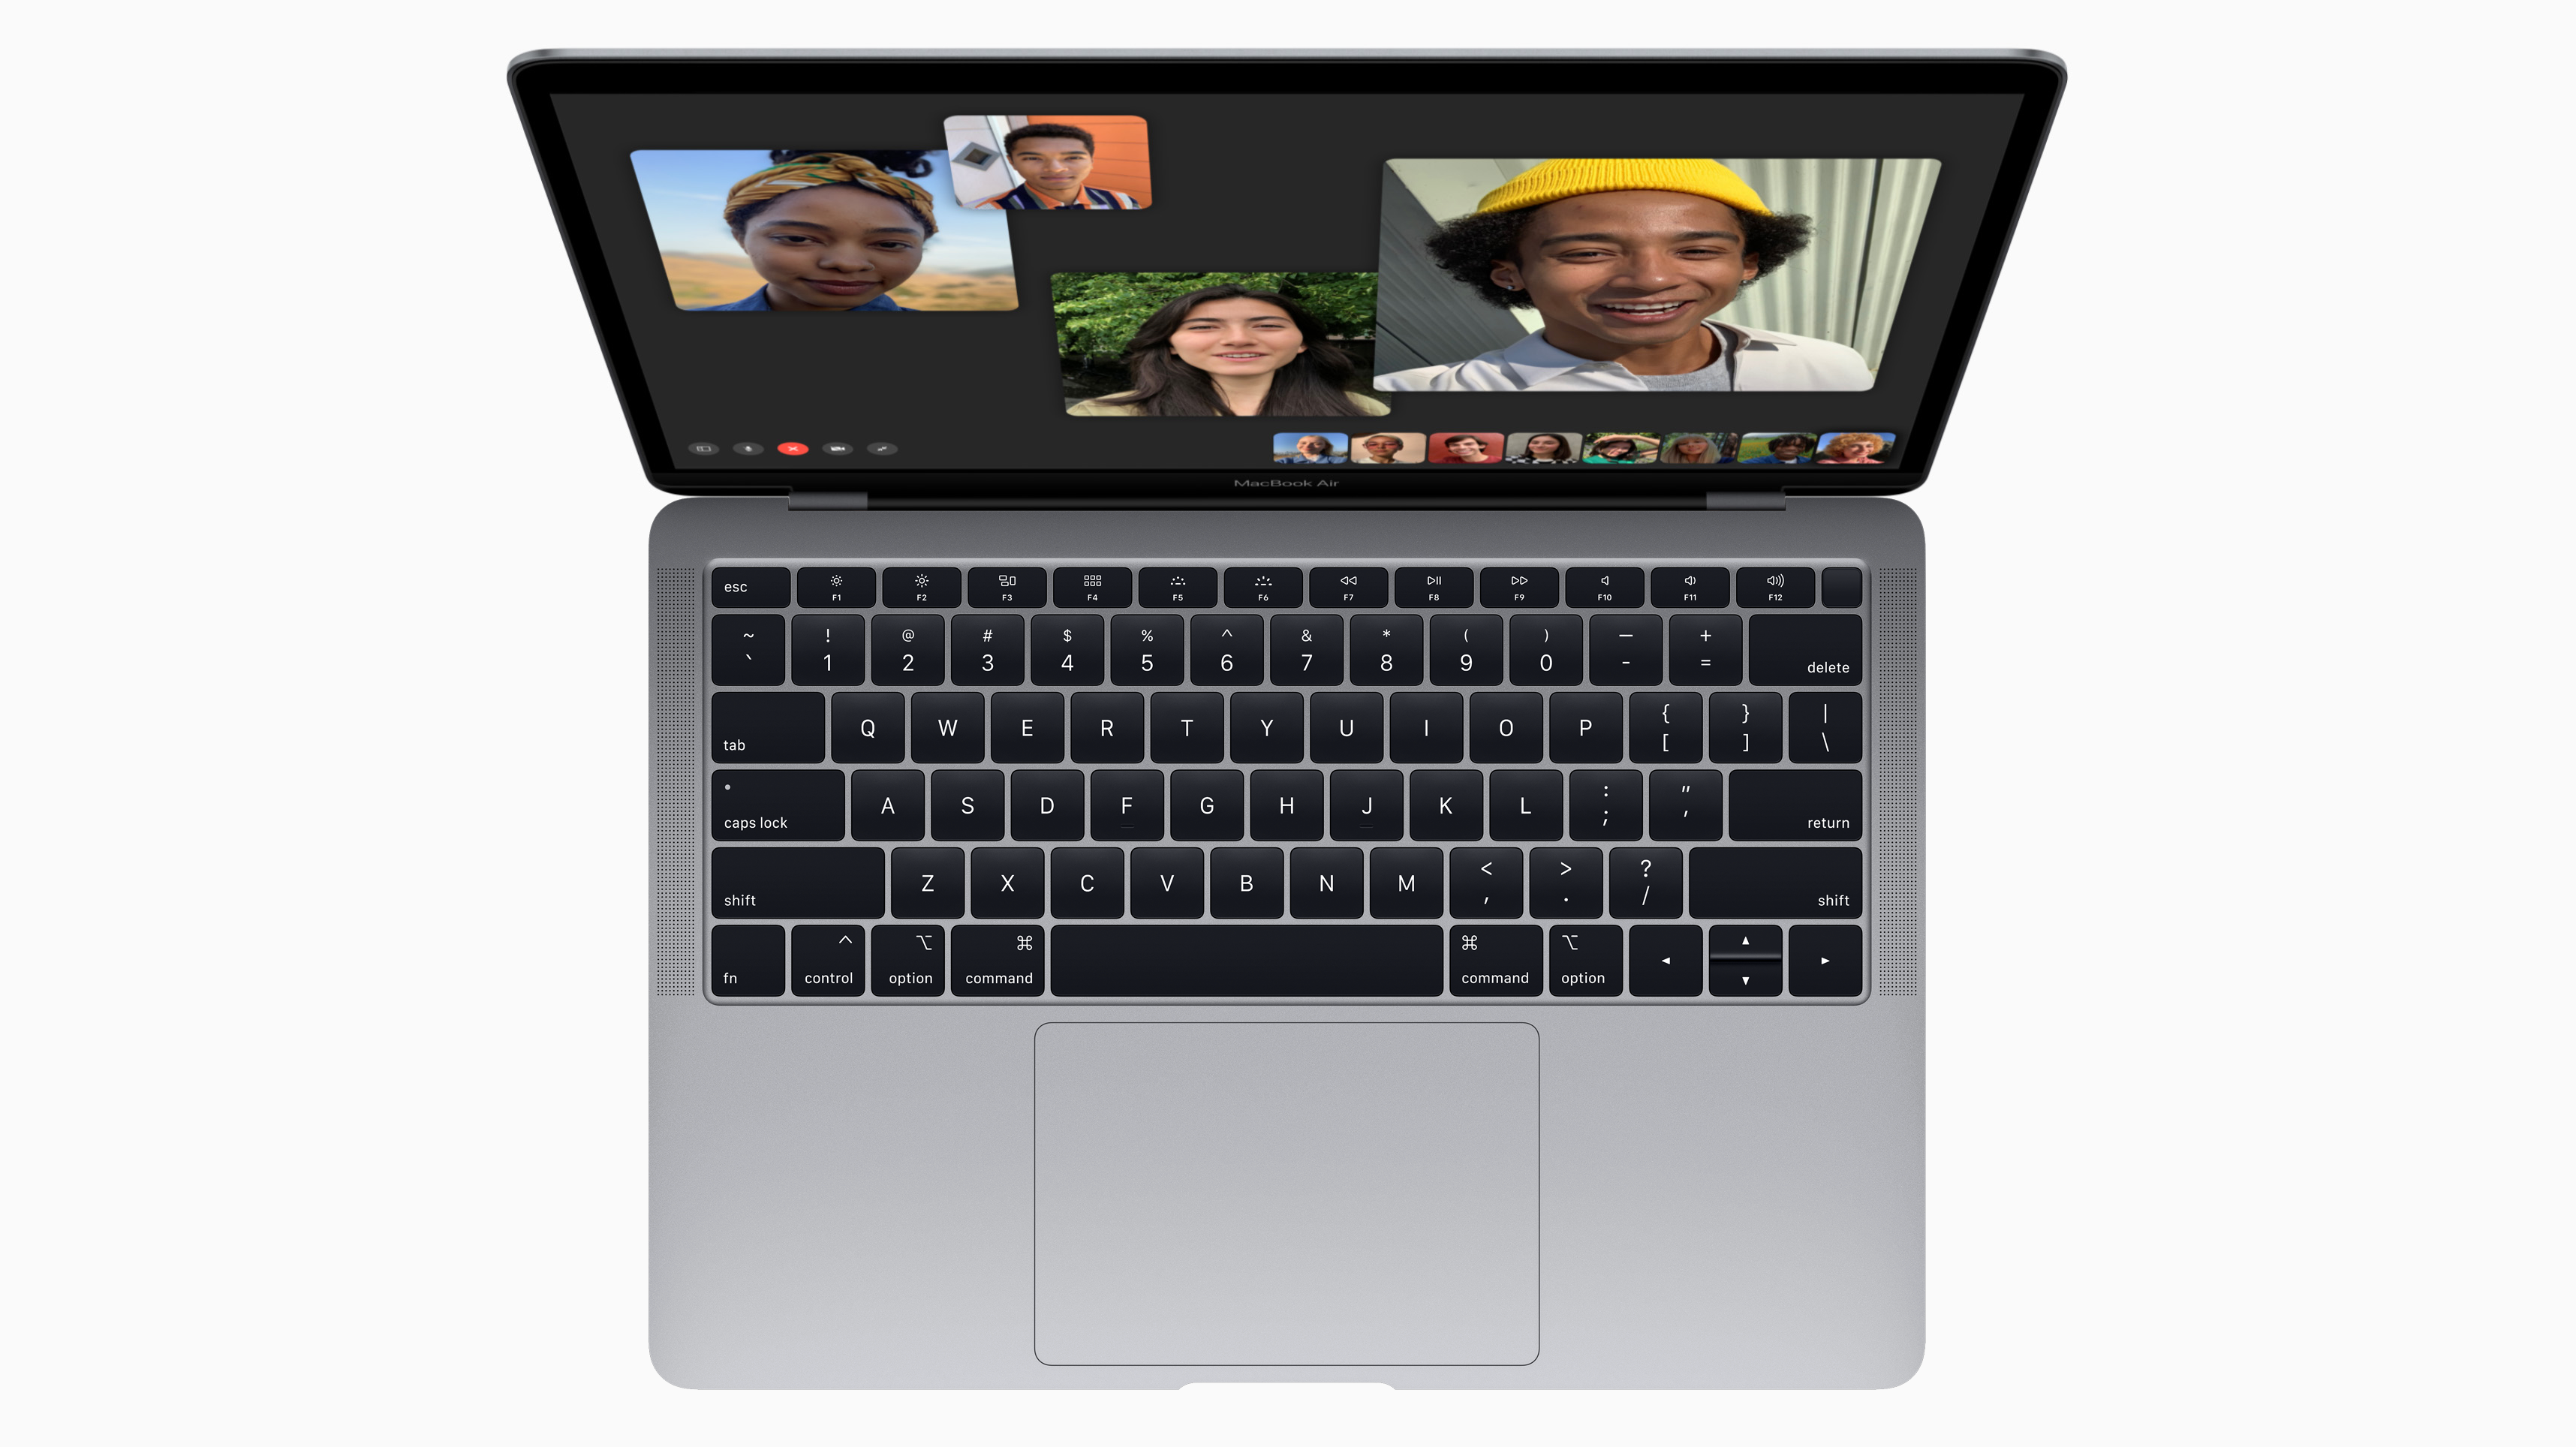 MacBook Air wird neu aufgelegt – mit Retina Display | heise online